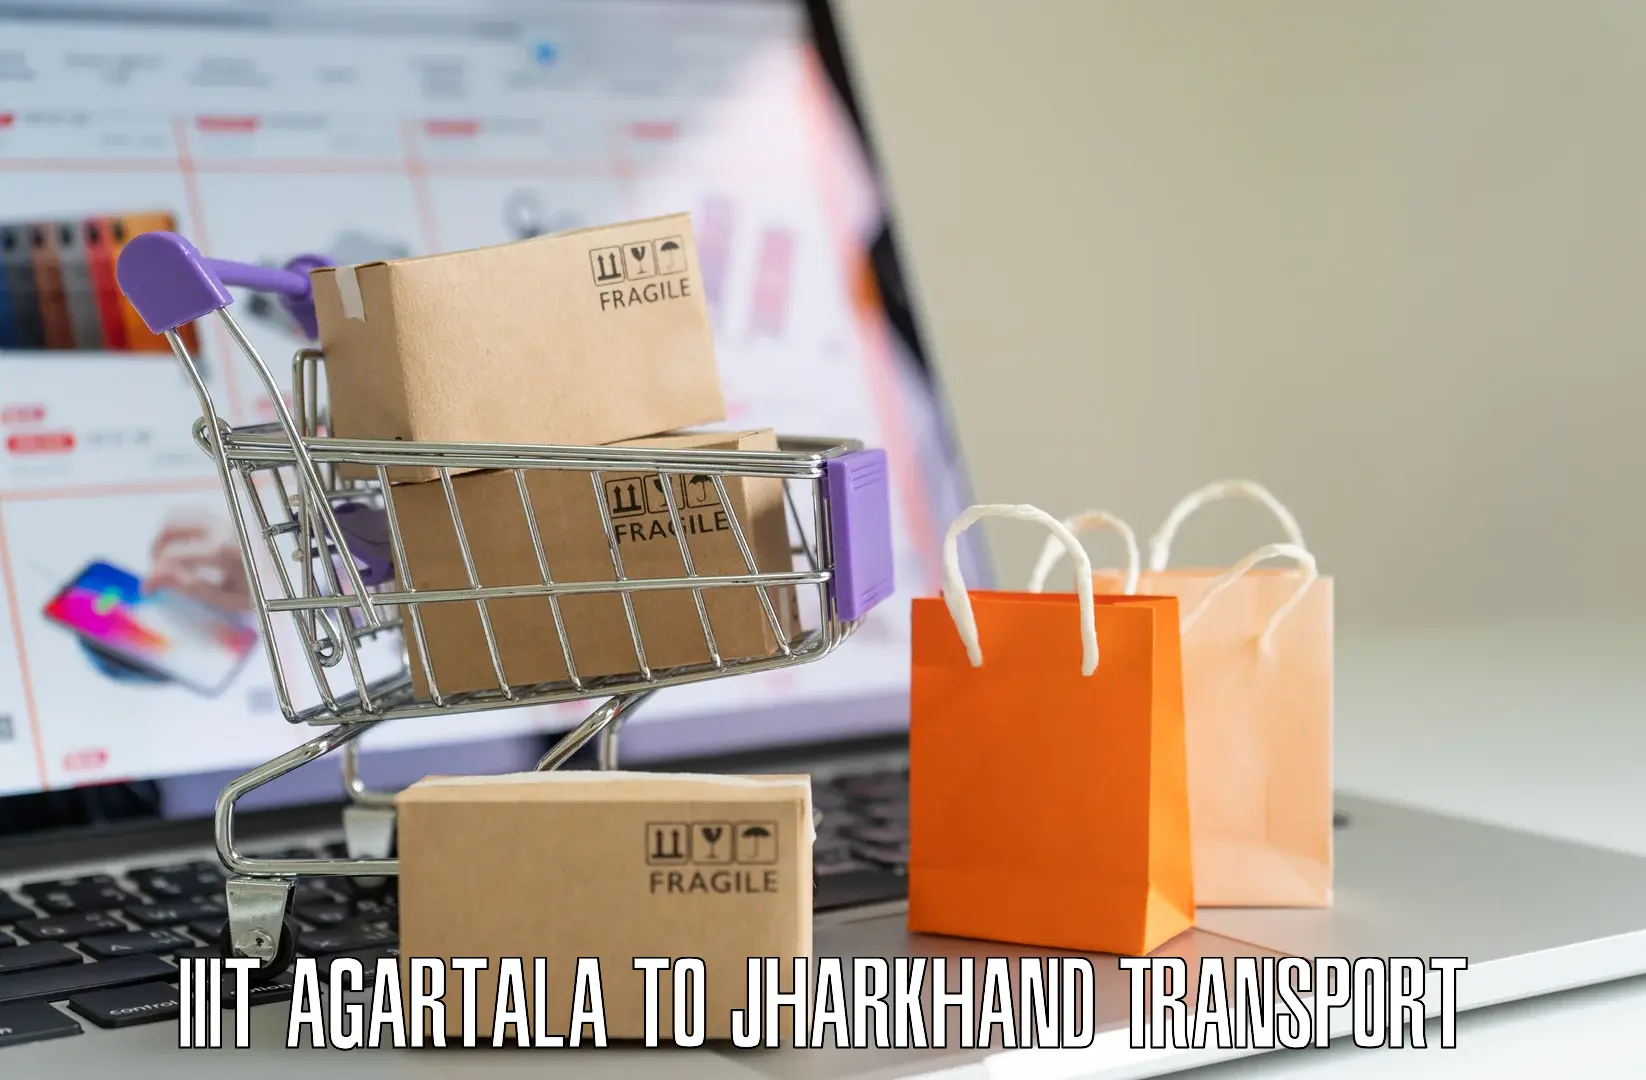 Nearby transport service IIIT Agartala to Ghatshila